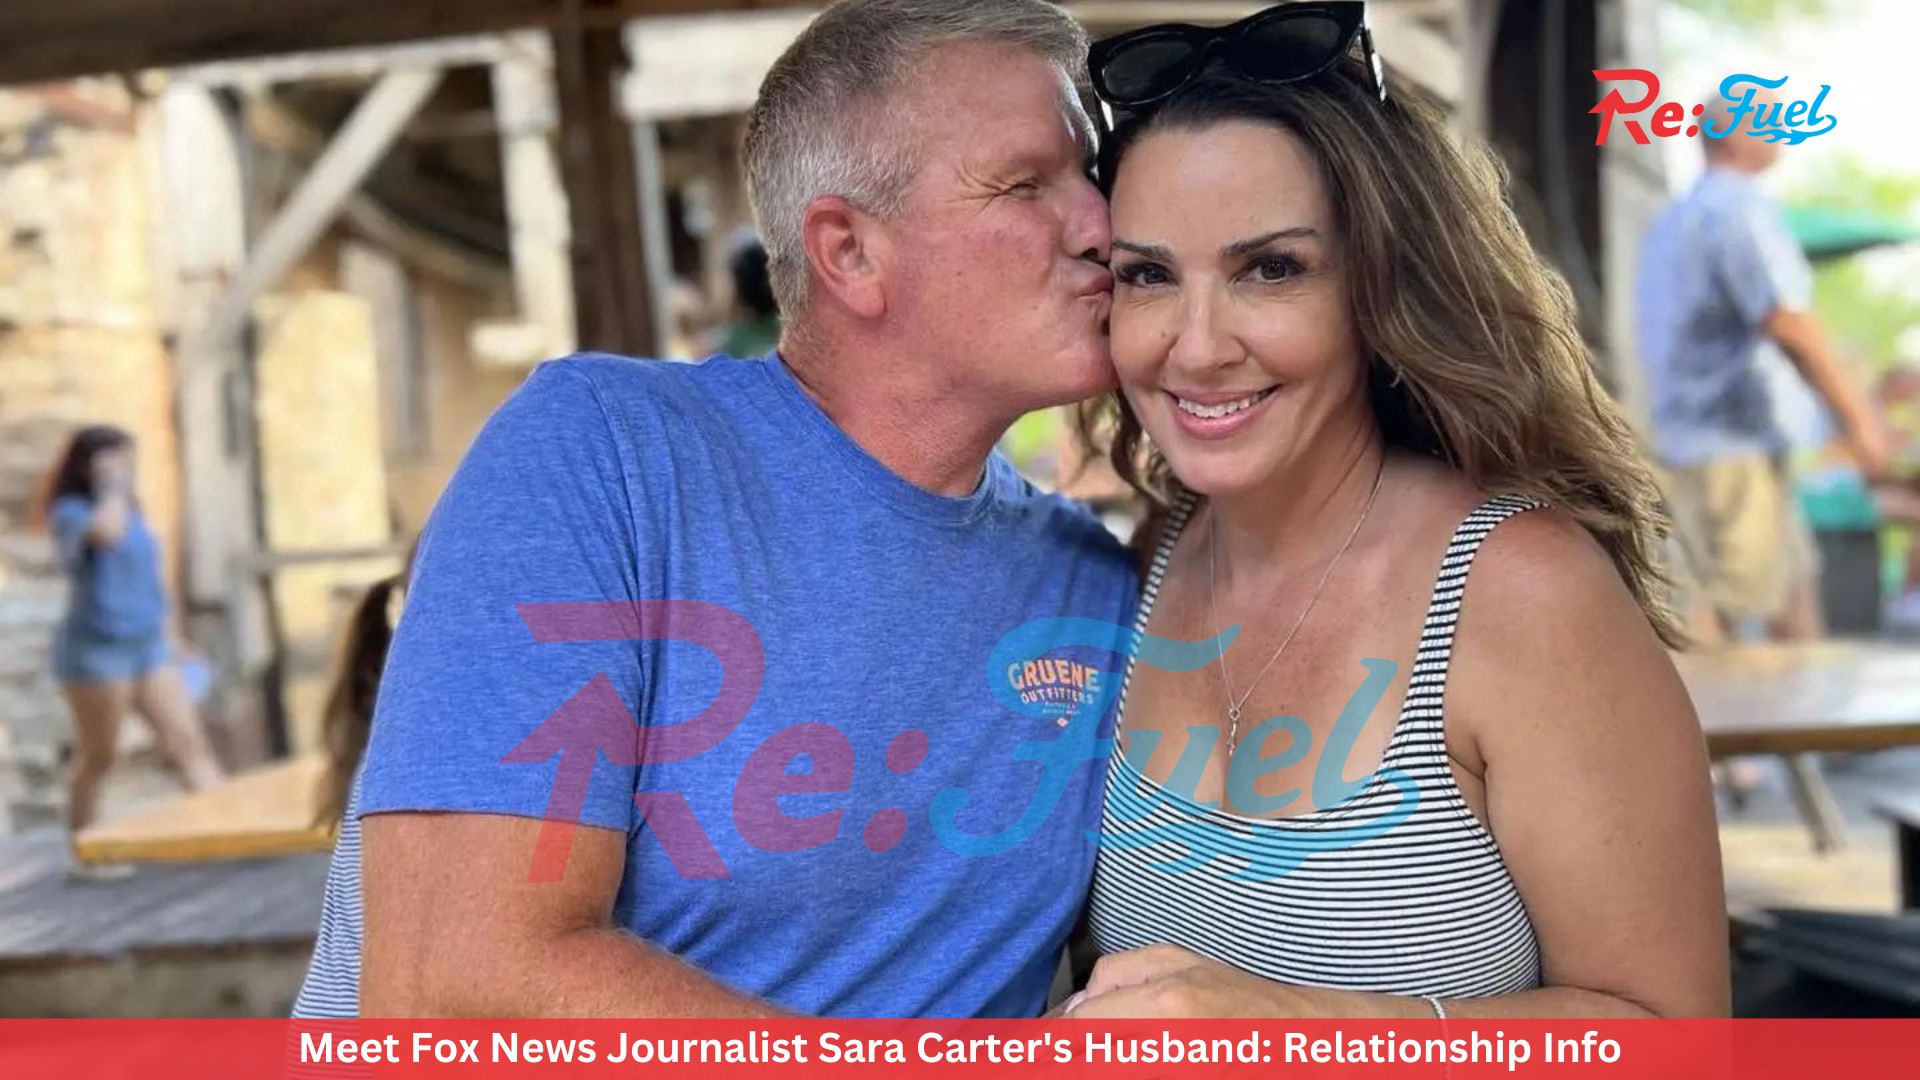 Meet Fox News Journalist Sara Carter's Husband: Relationship Info